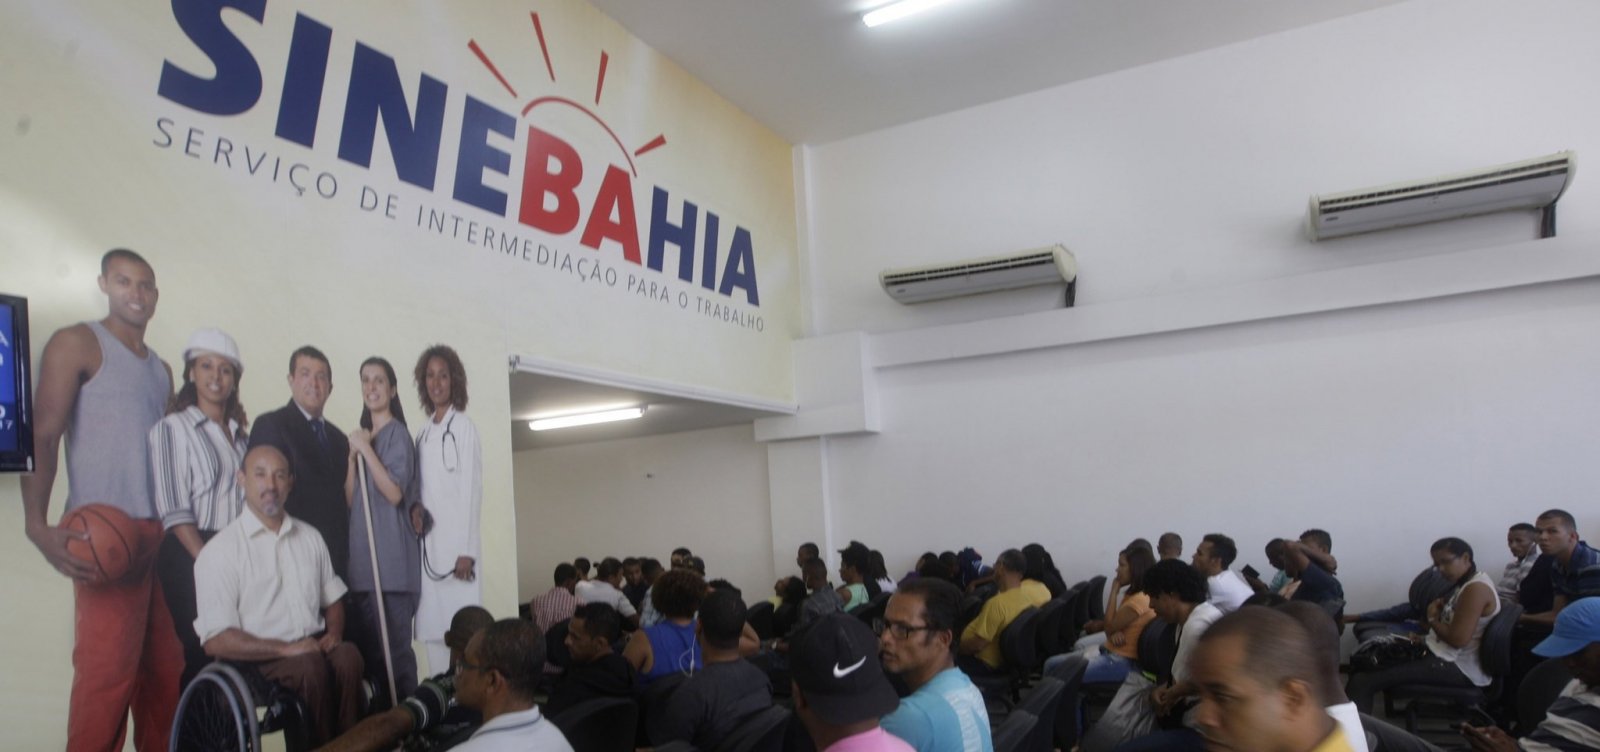 Rede SineBahia passa a exigir comprovante de vacinação para atendimento